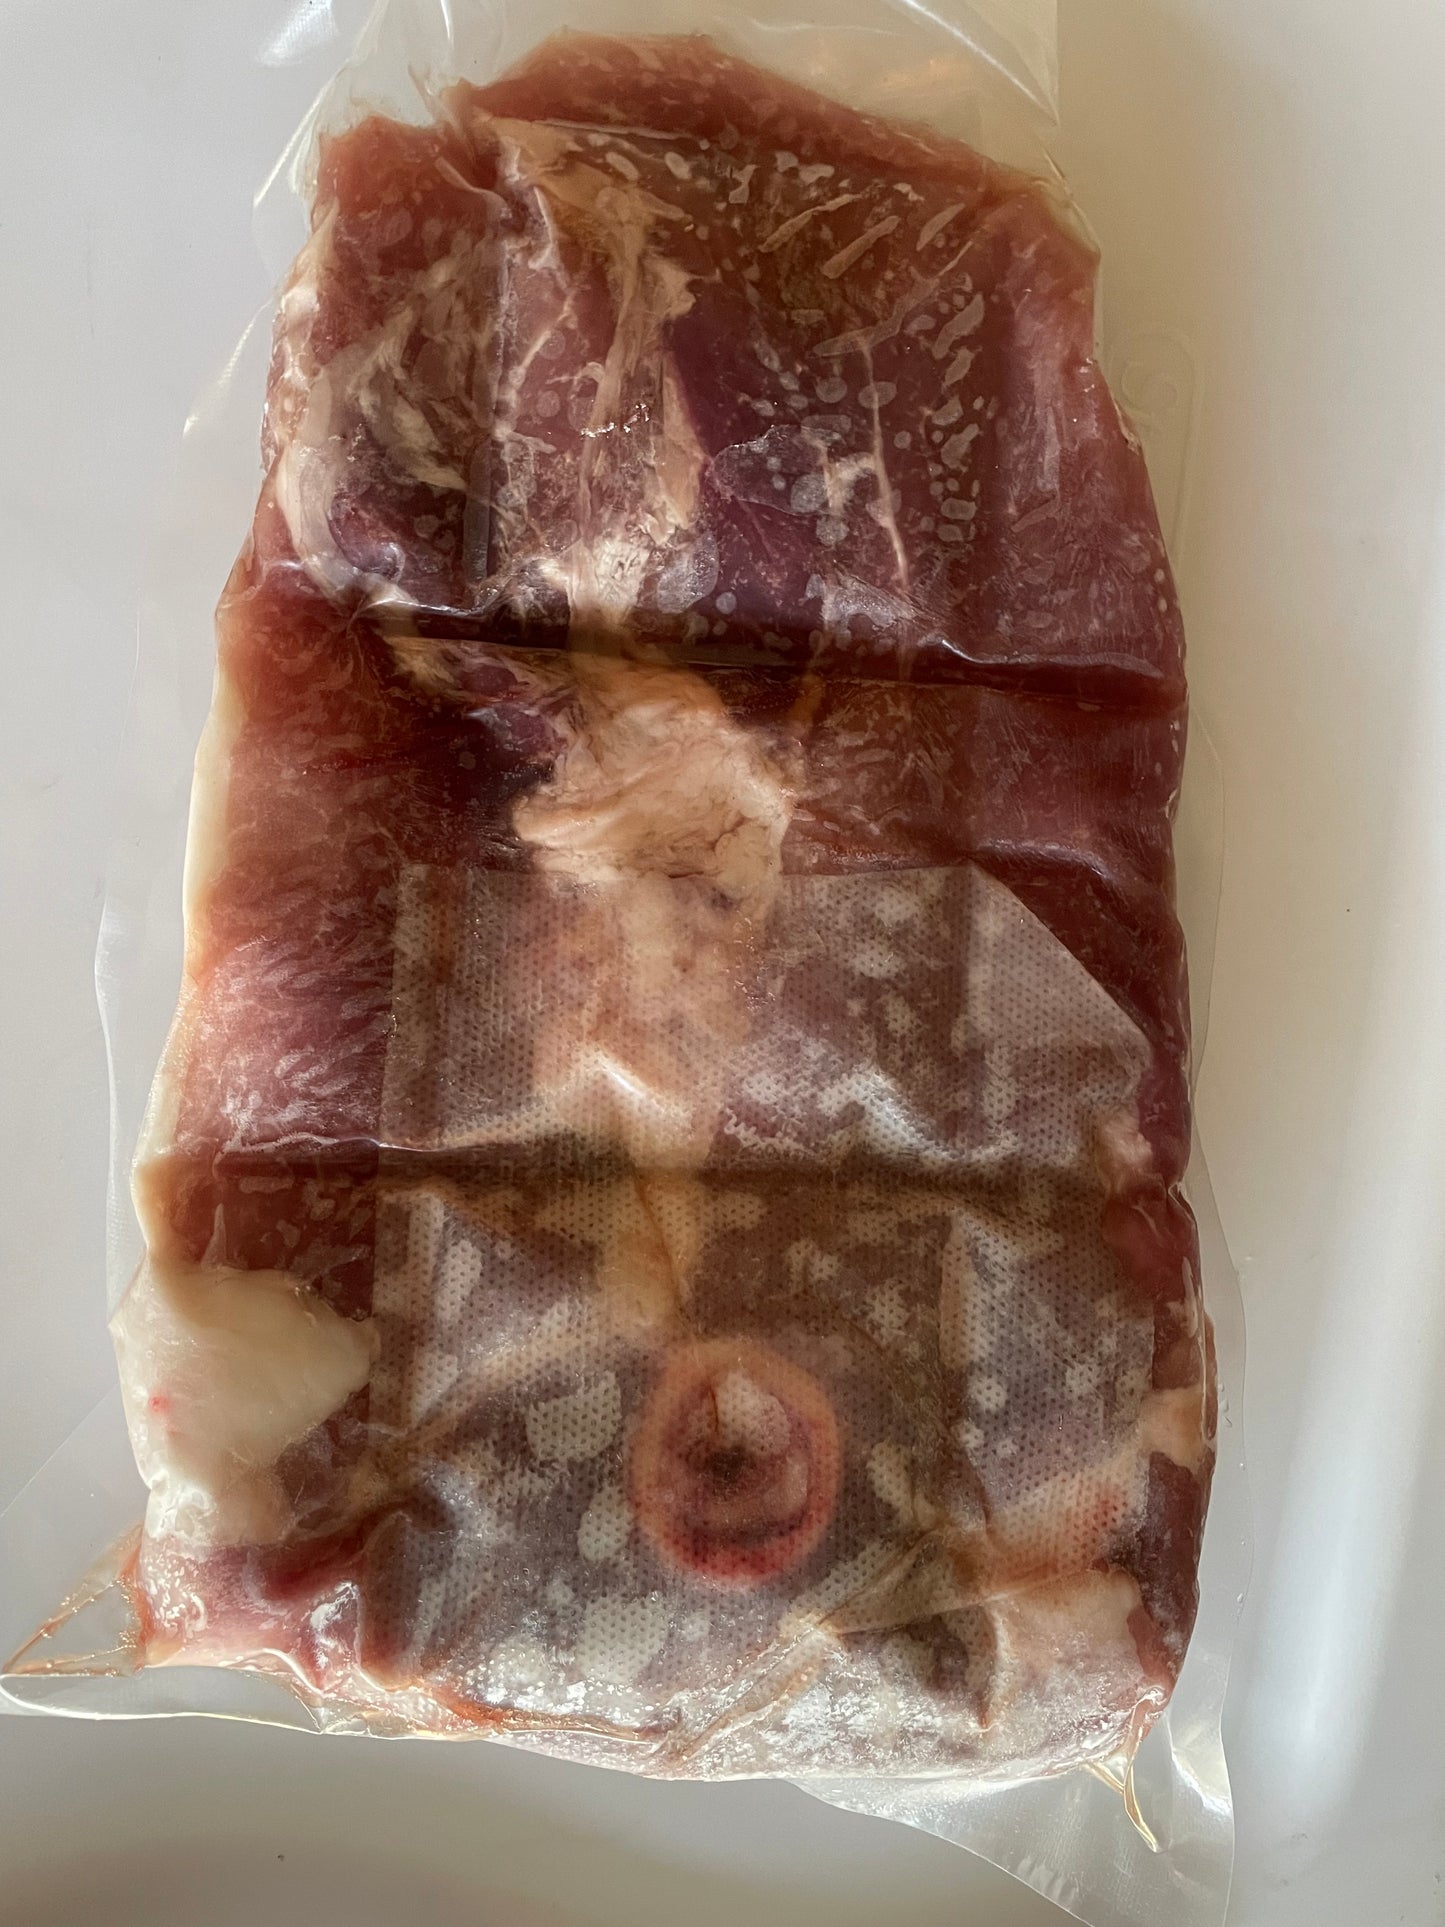 Pasture-Raised Ham Steak